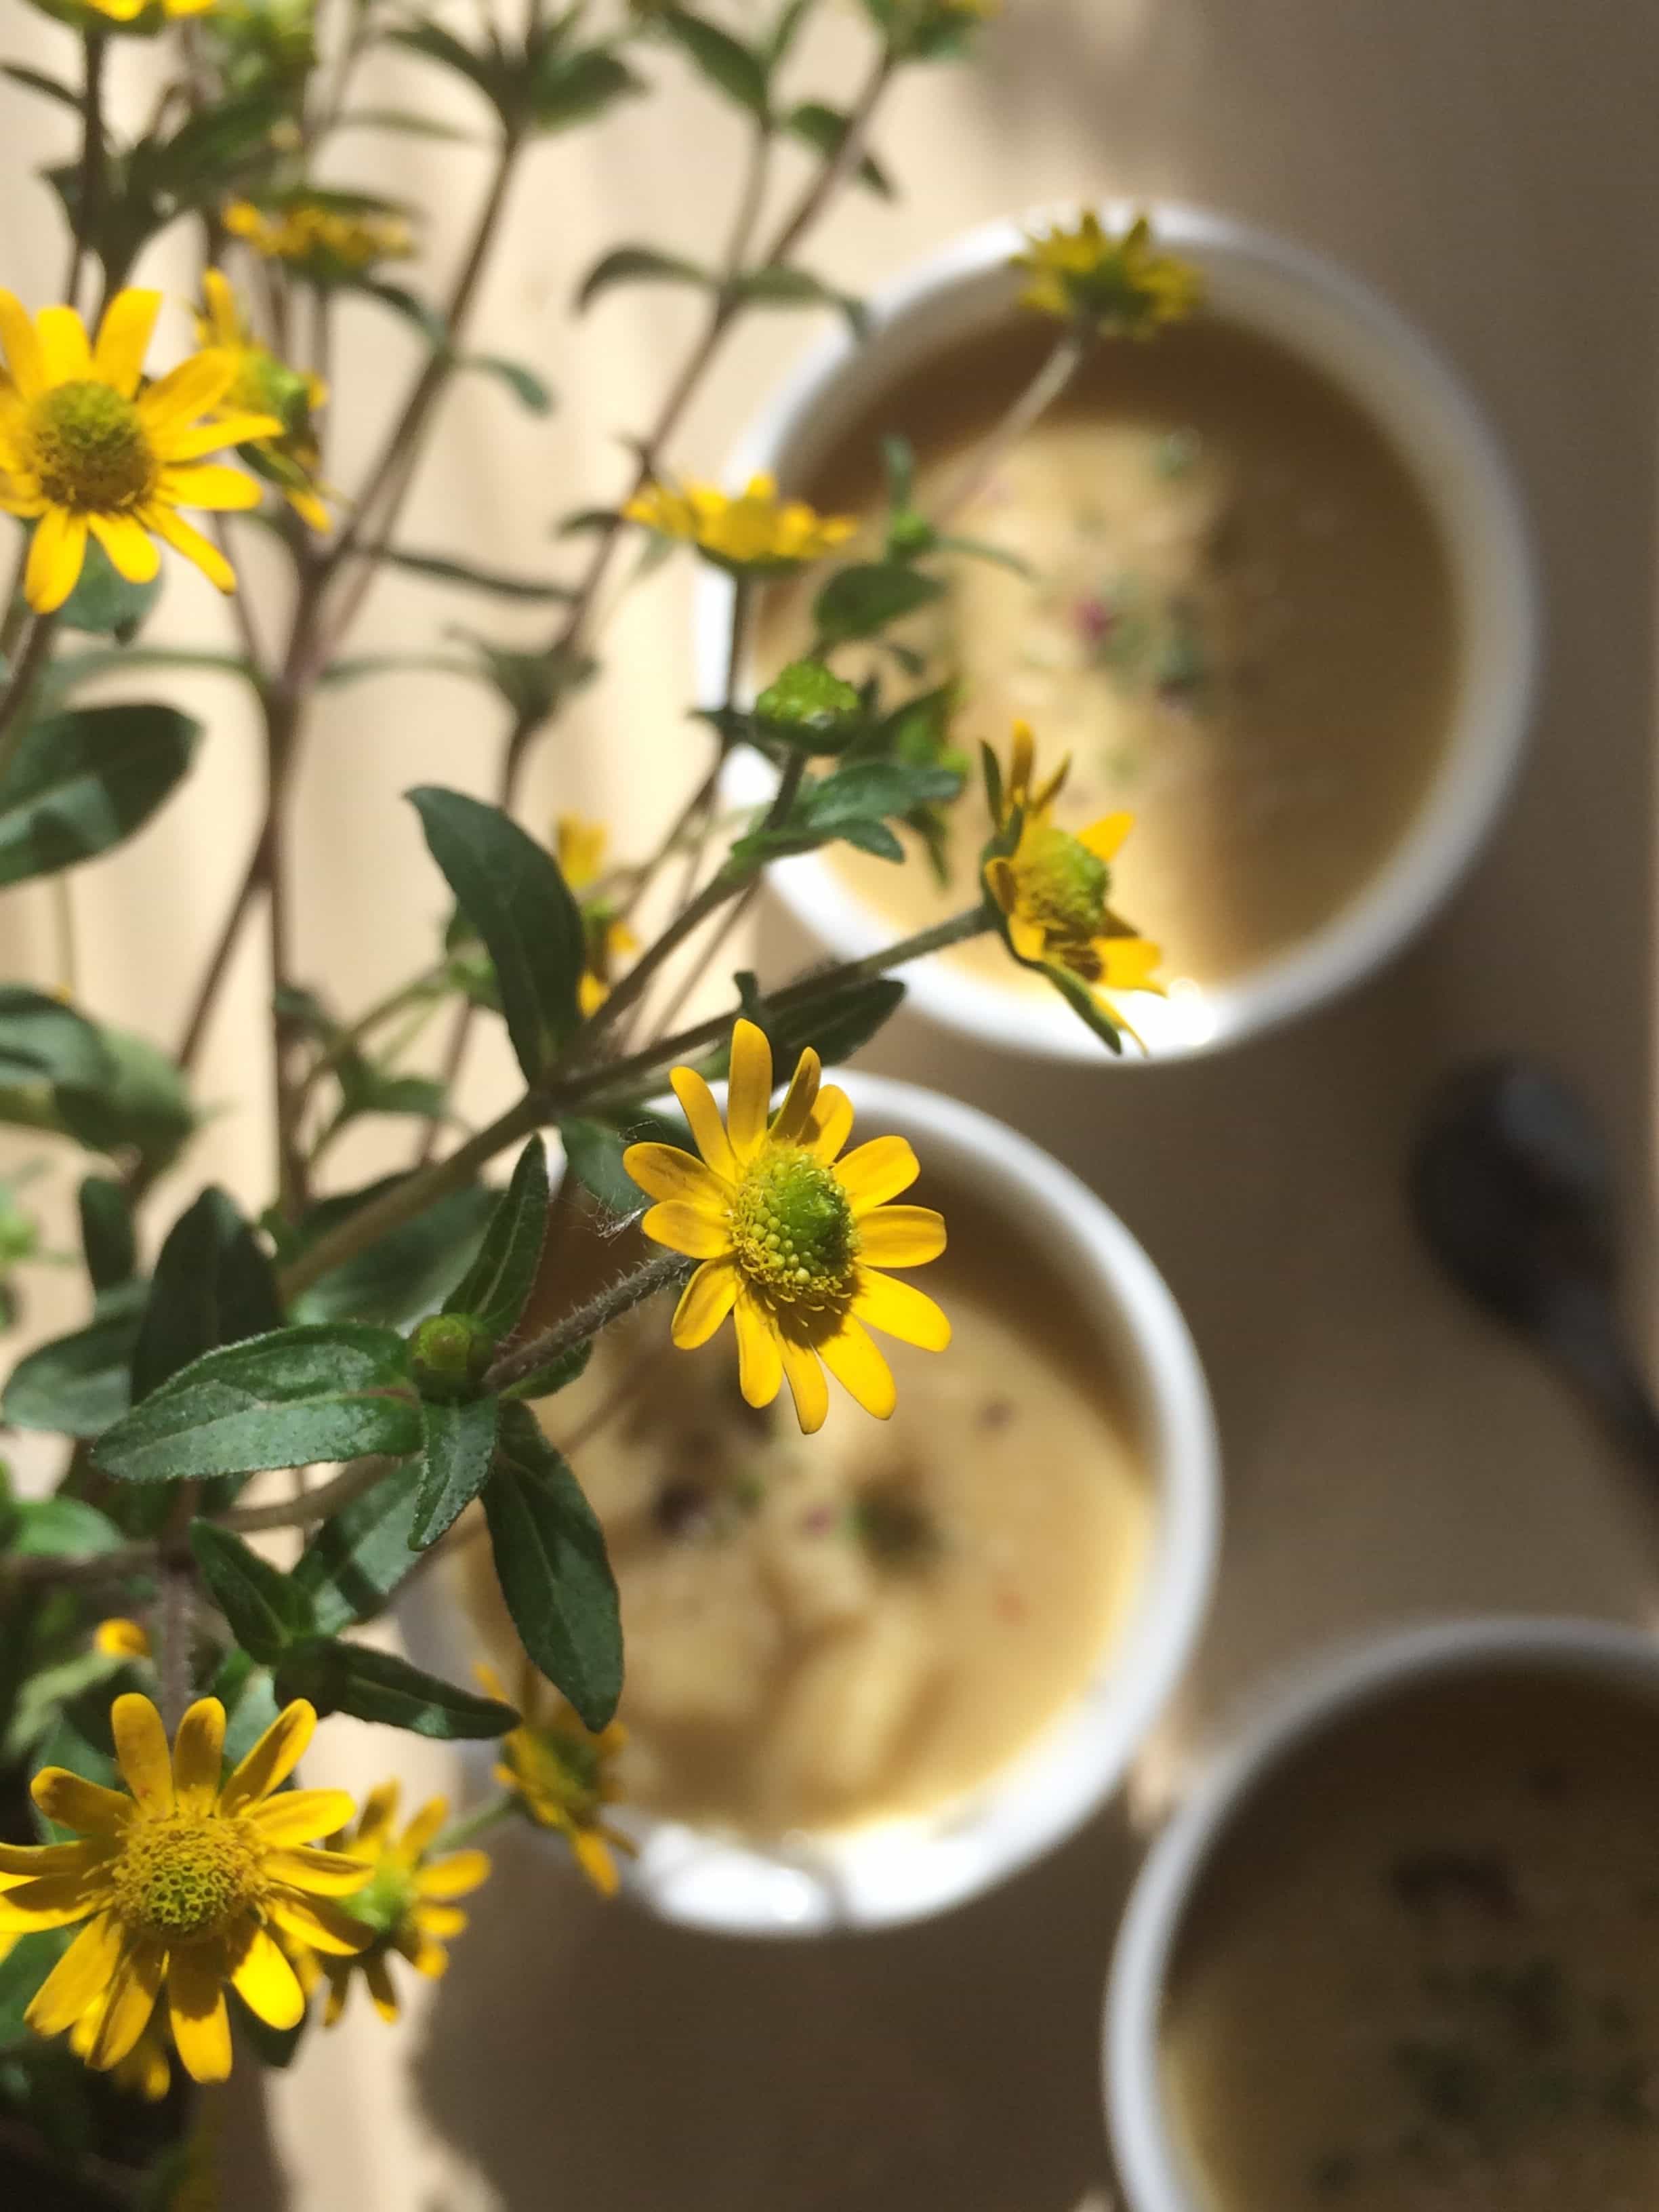 Zupa z ciecierzycy | Chickpeas creamy soup